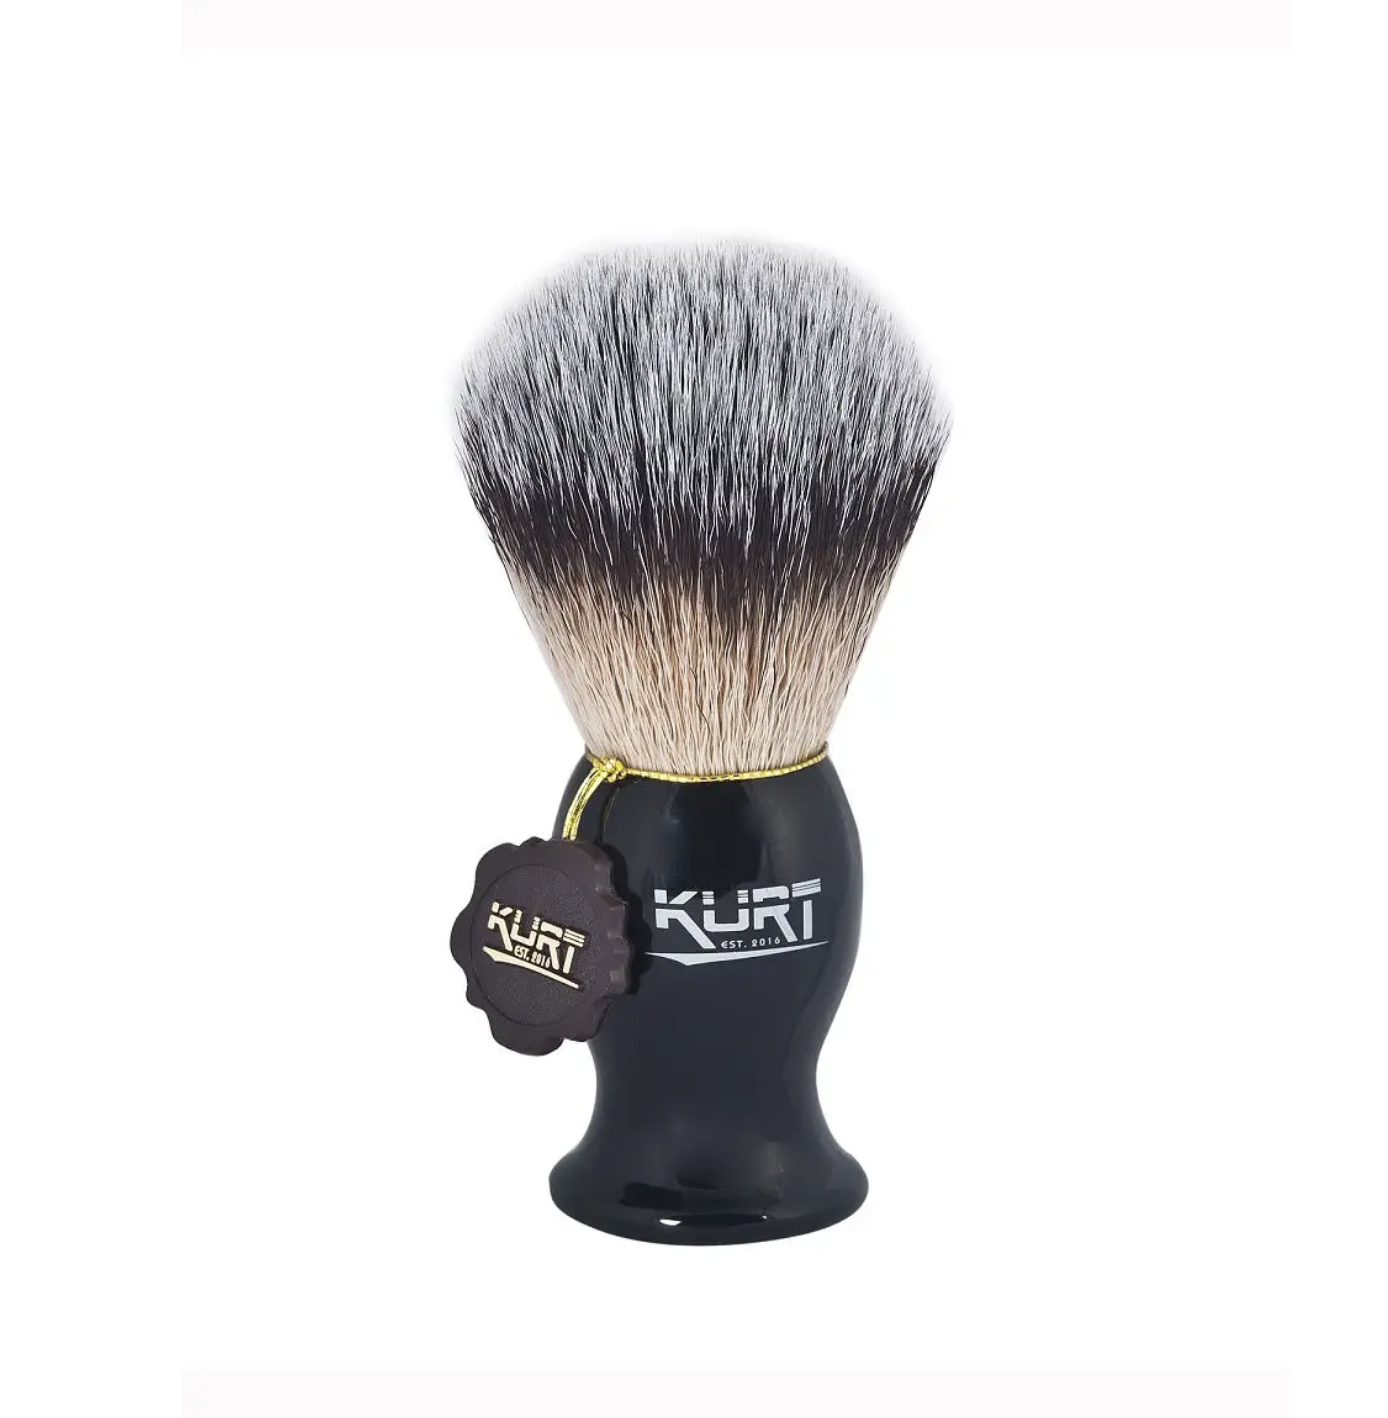   / Kurt -      Hi-Brush K_10211S   1 